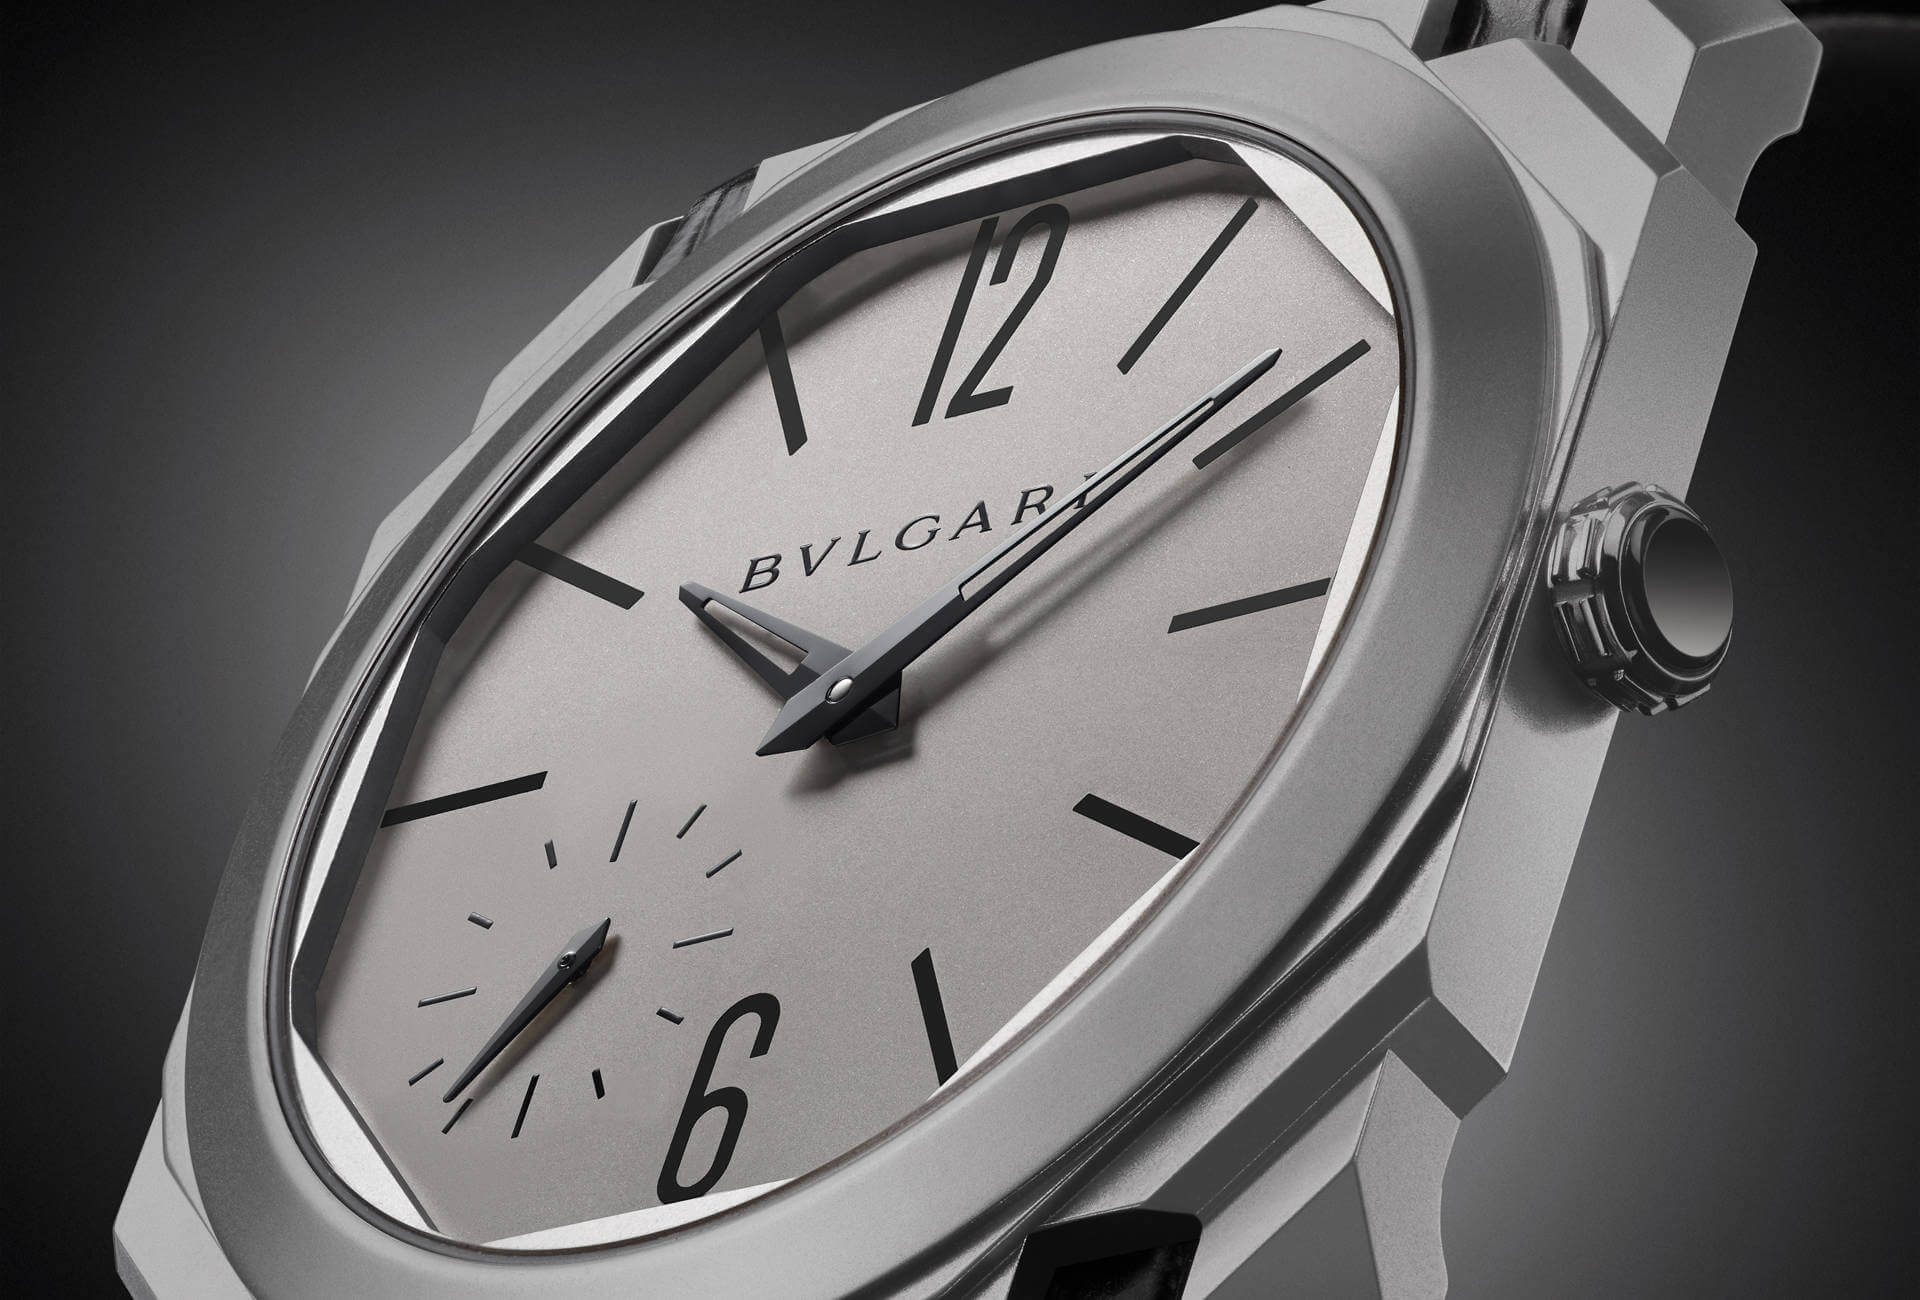 bvlgari classic watches